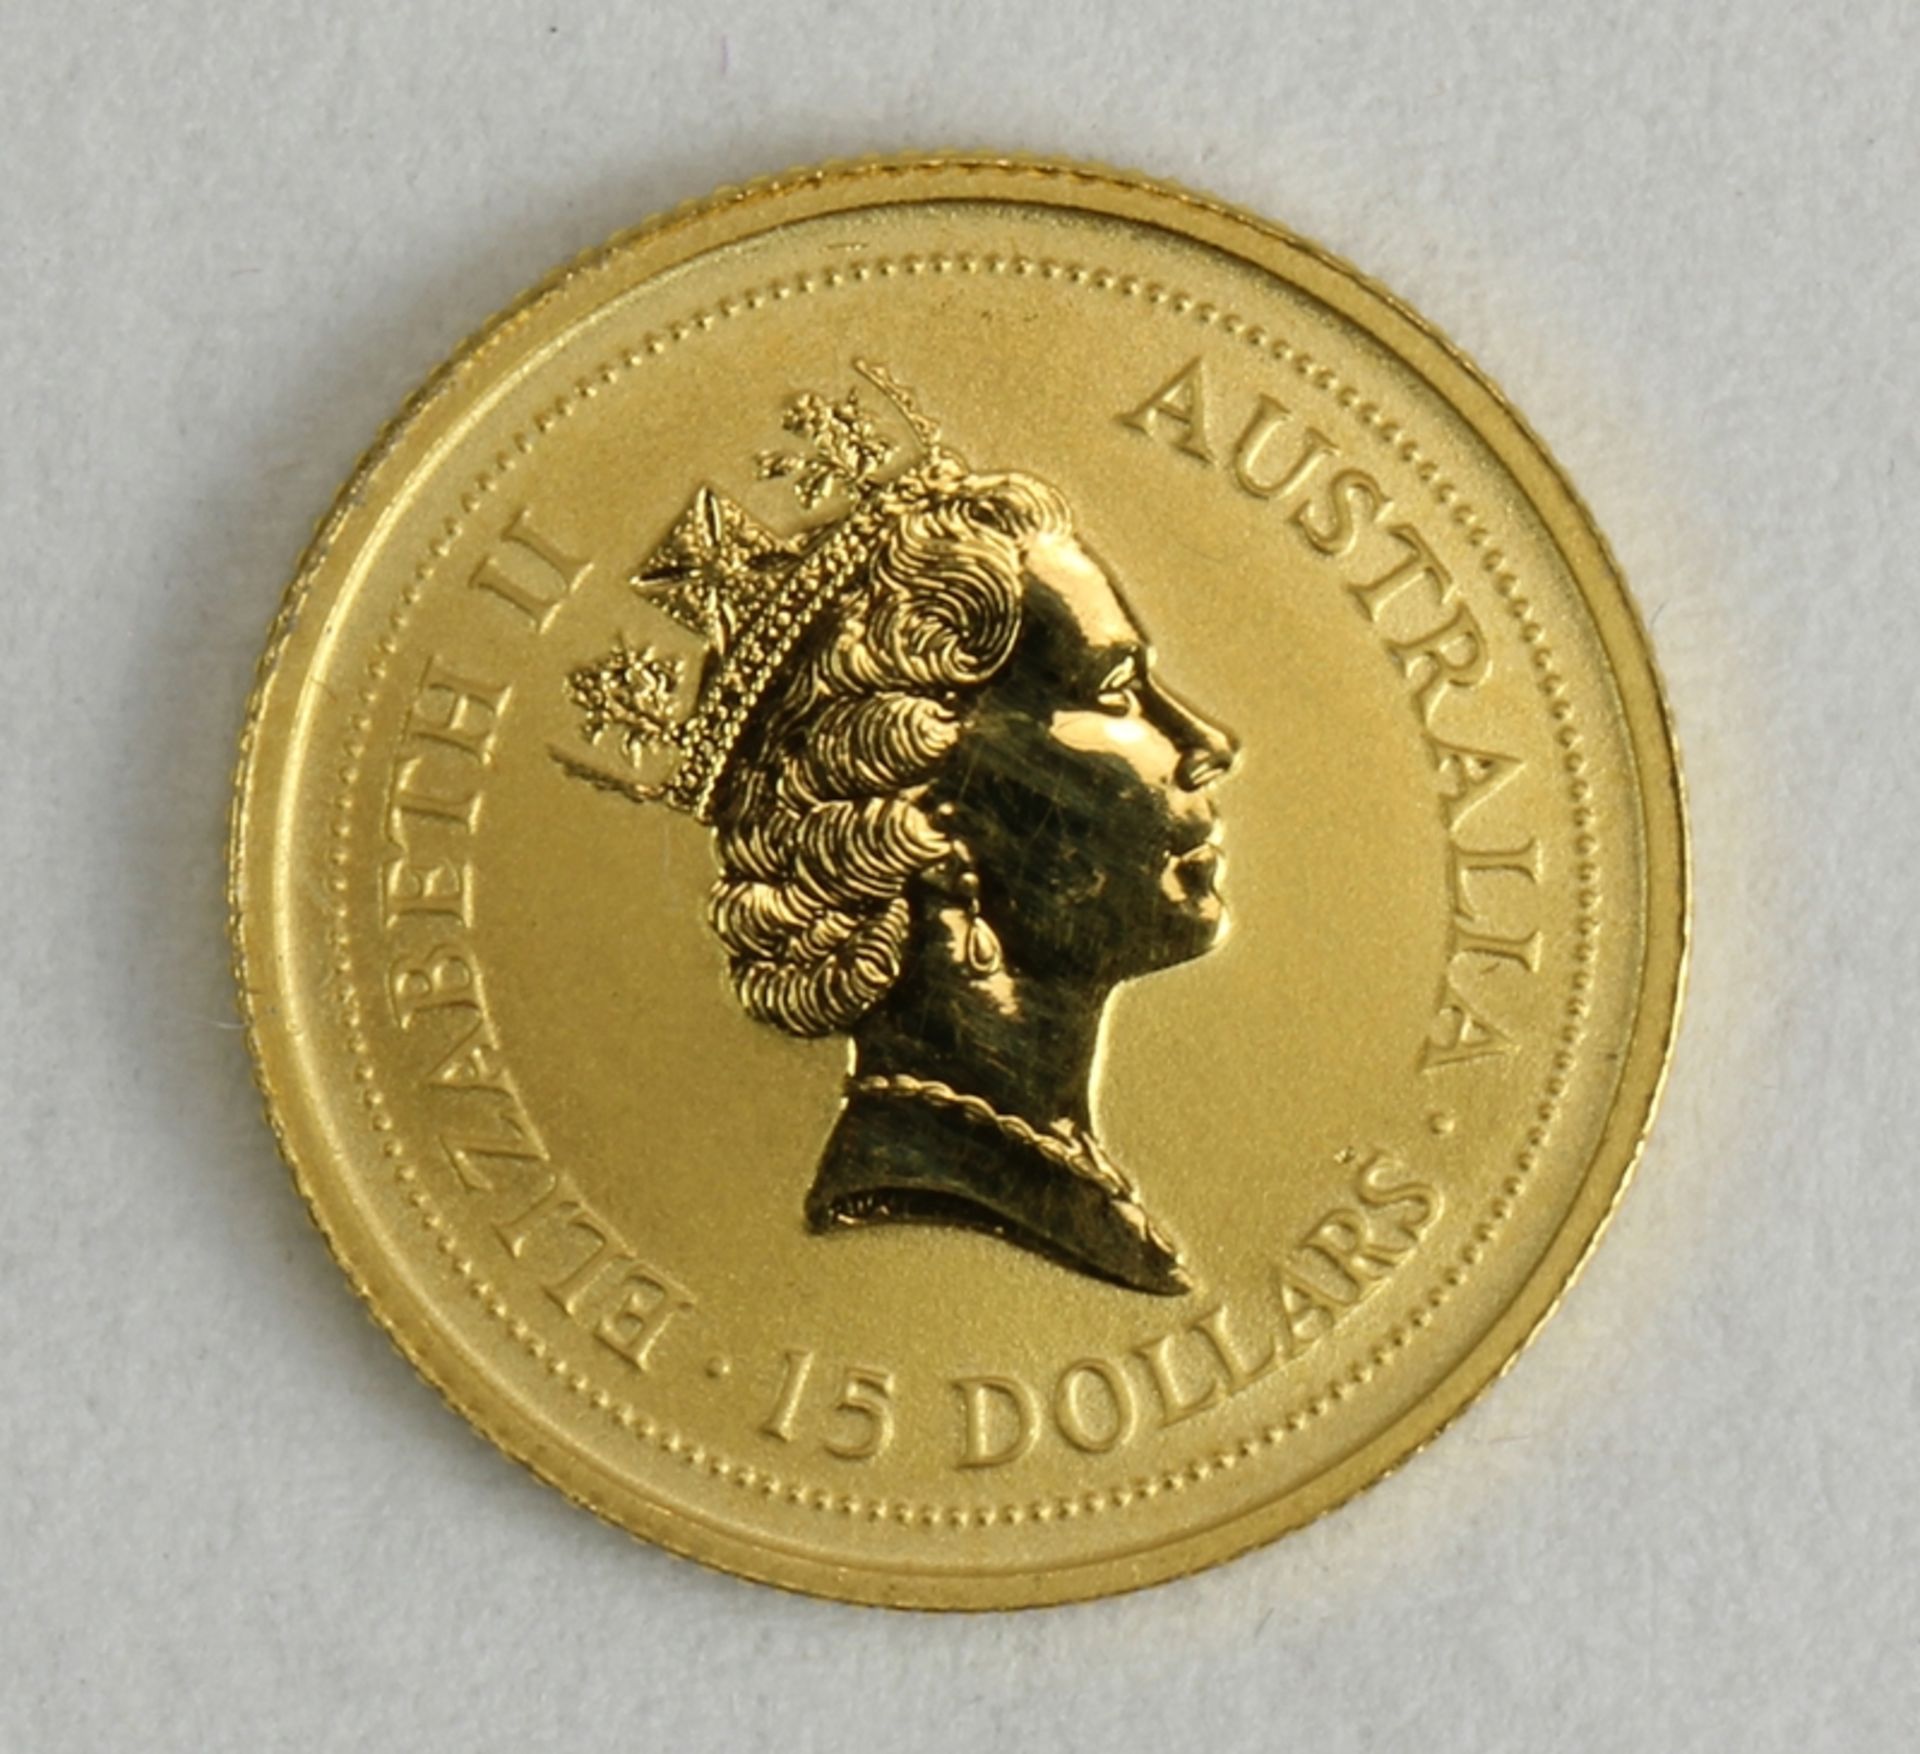 15 australische Dollar